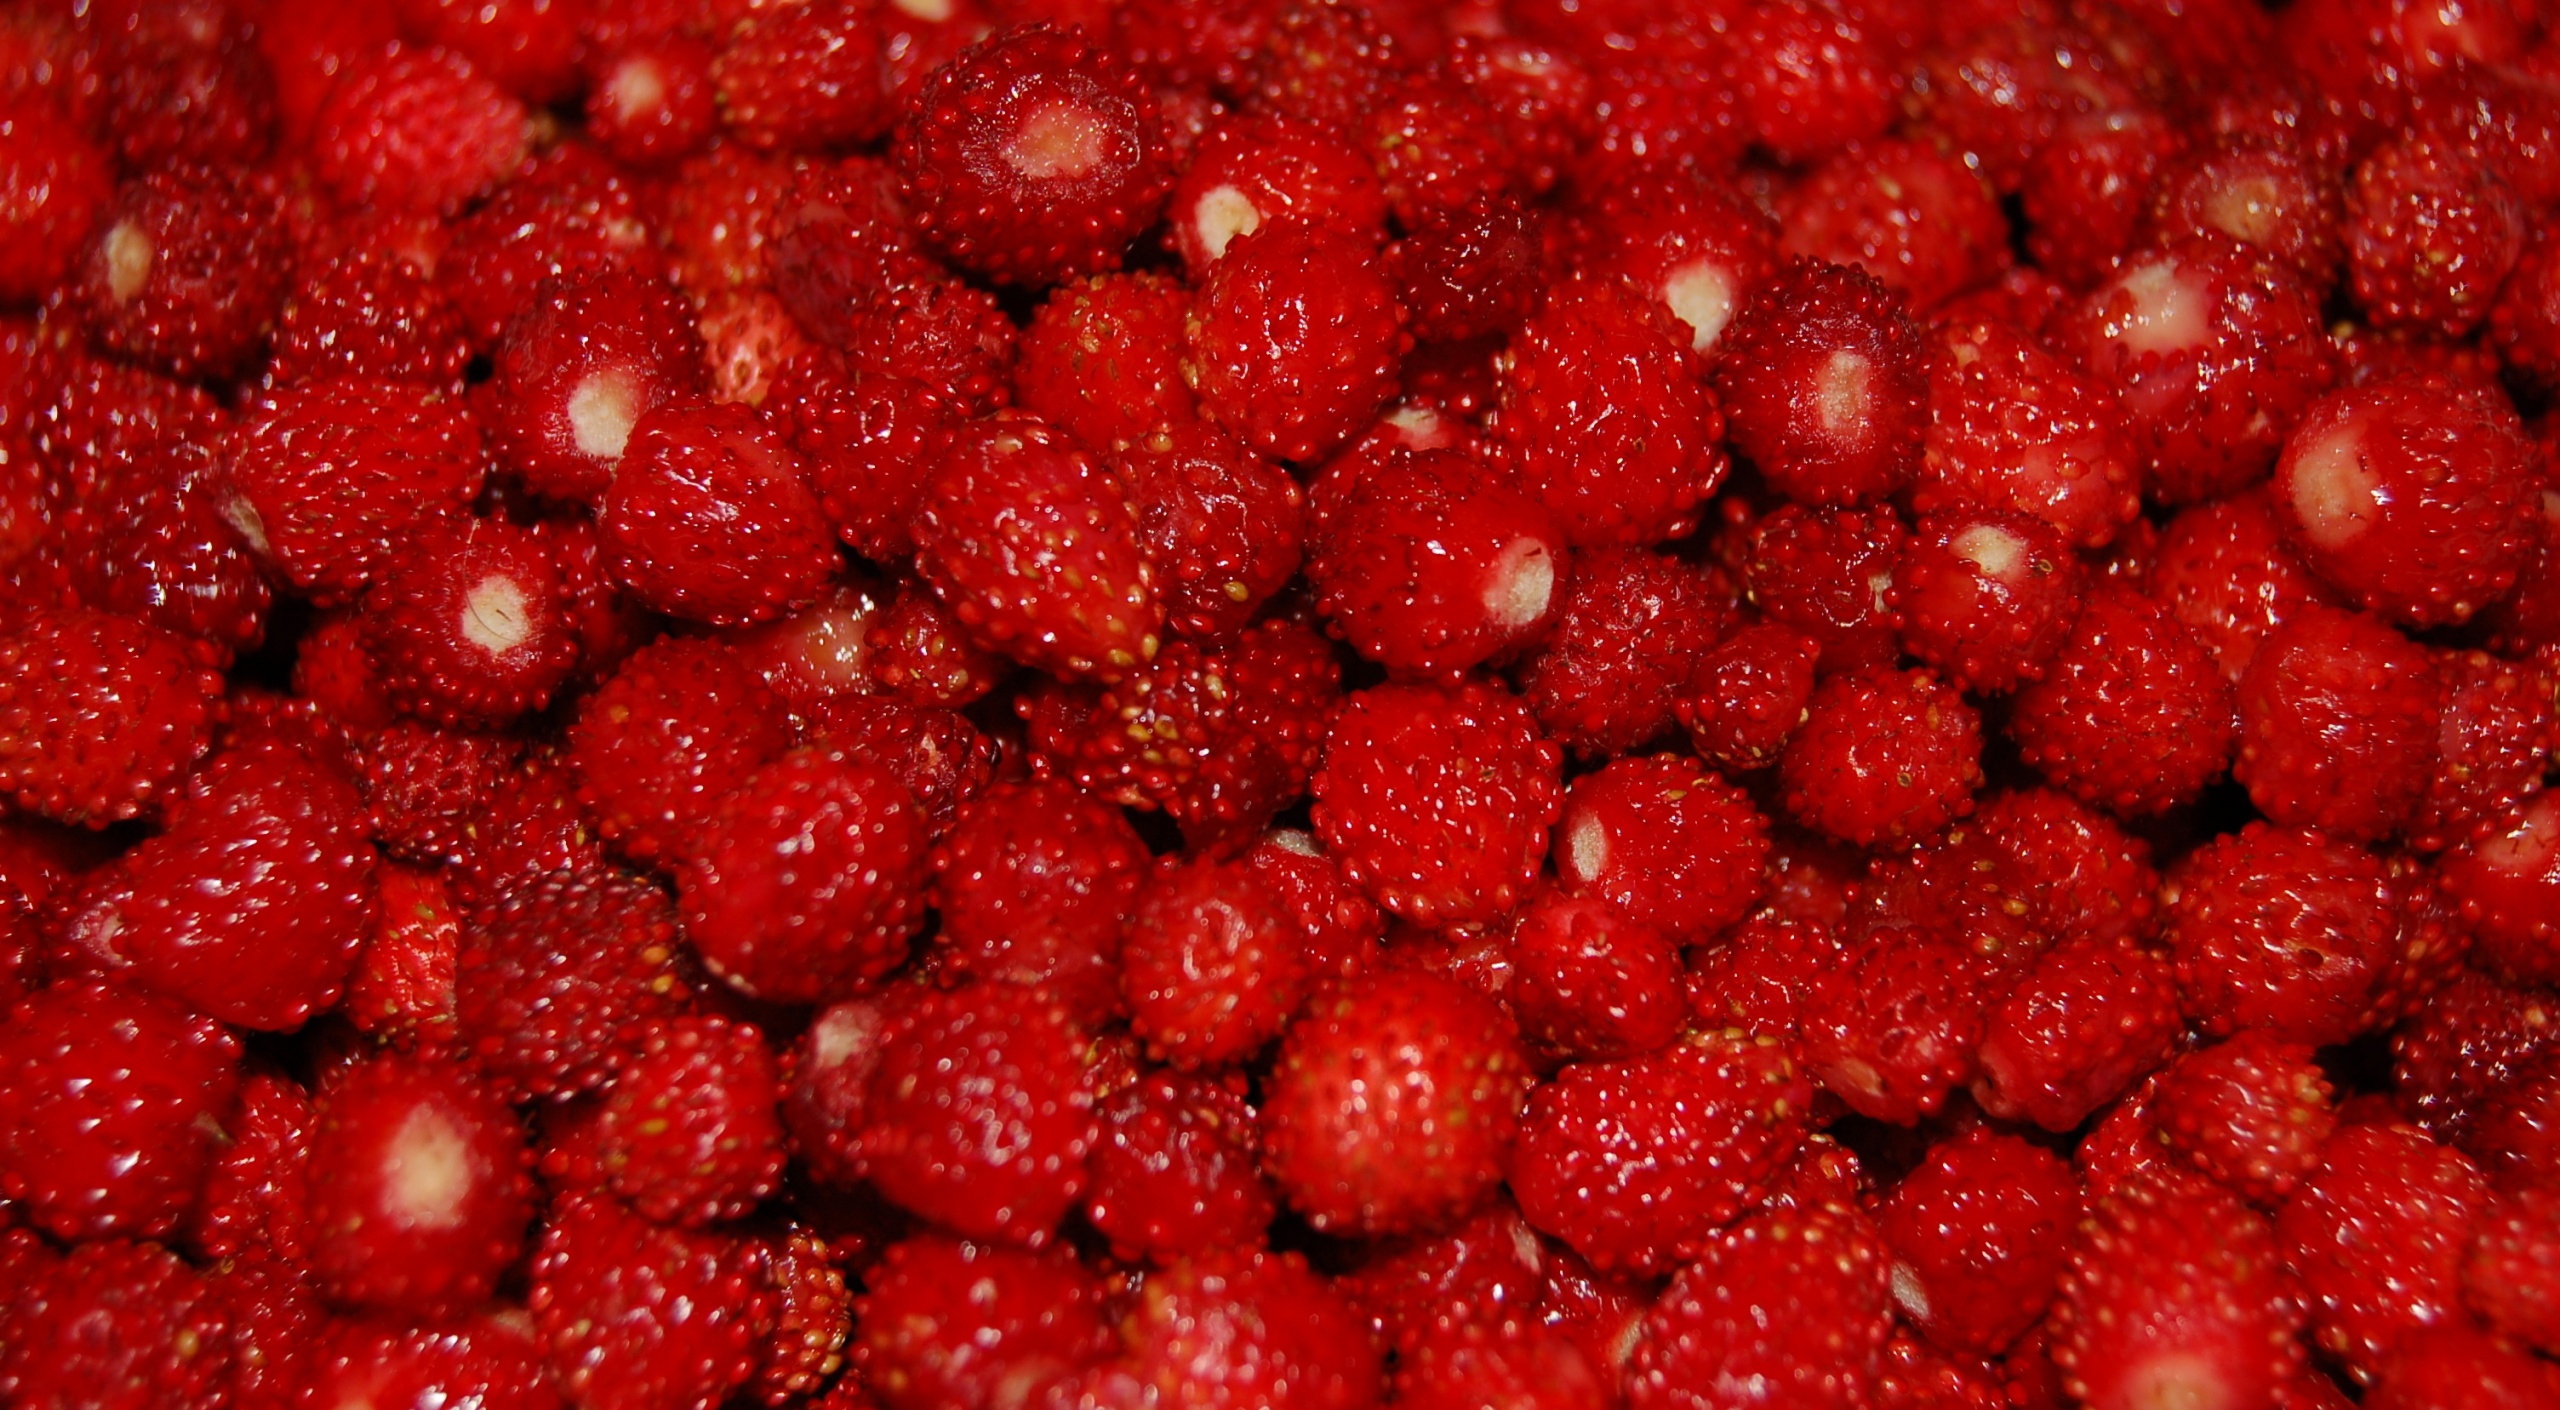 新鲜红色小草莓壁纸